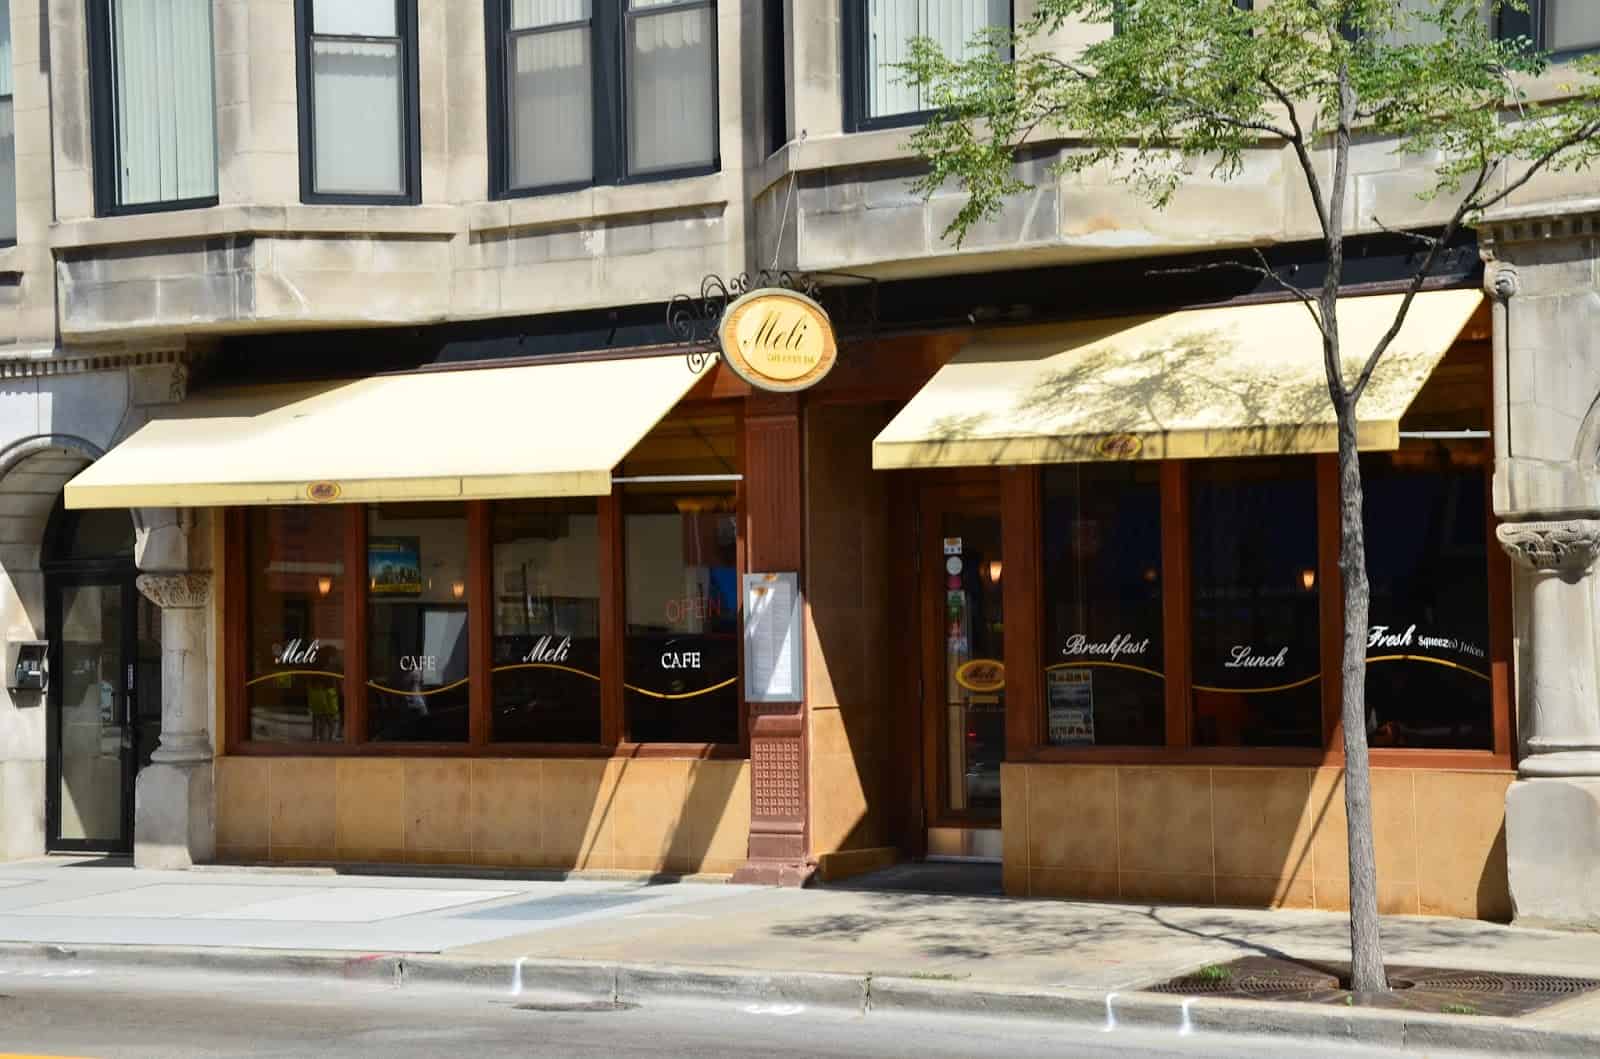 Meli Café in Greektown Chicago